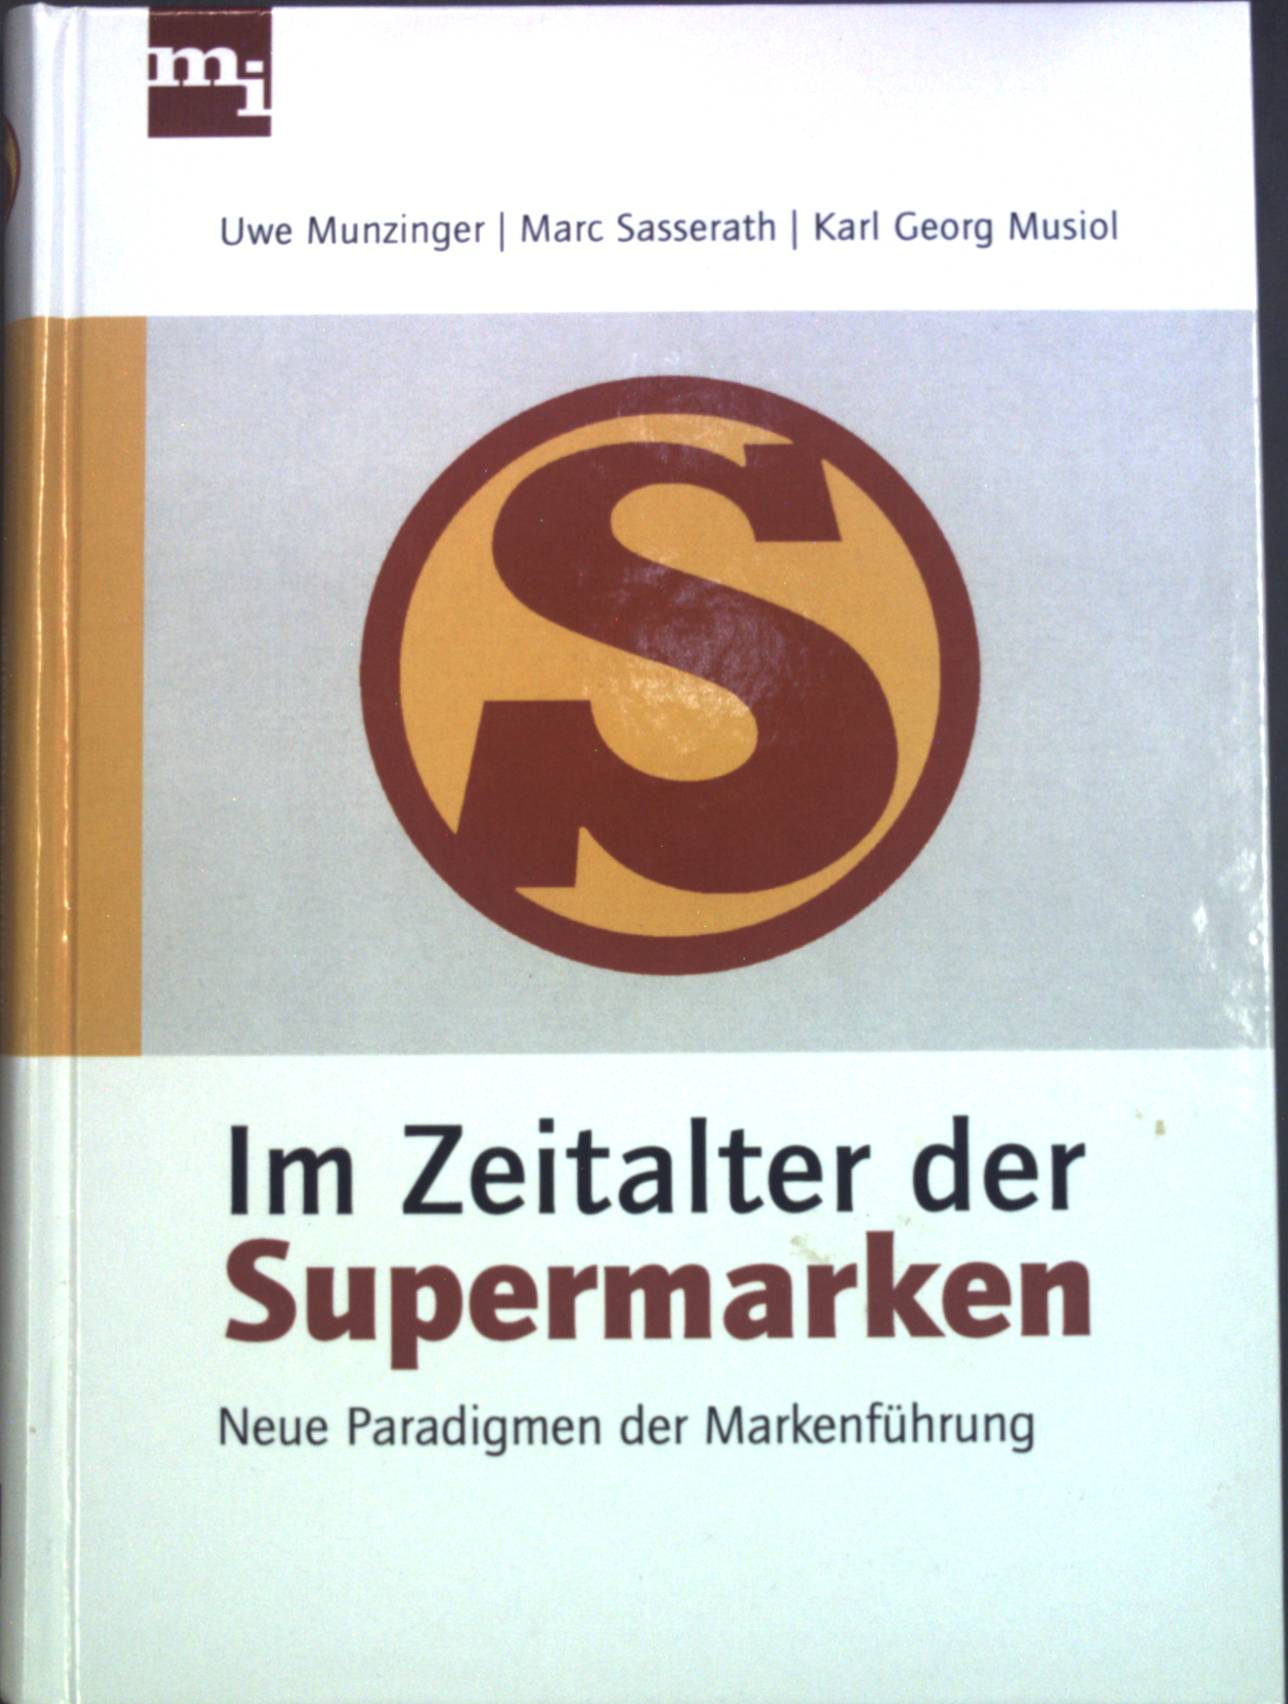 Im Zeitalter der Supermarken : neue Paradigmen der Markenführung. - Munzinger, Uwe, Marc Sasserath und Karl Georg Musiol